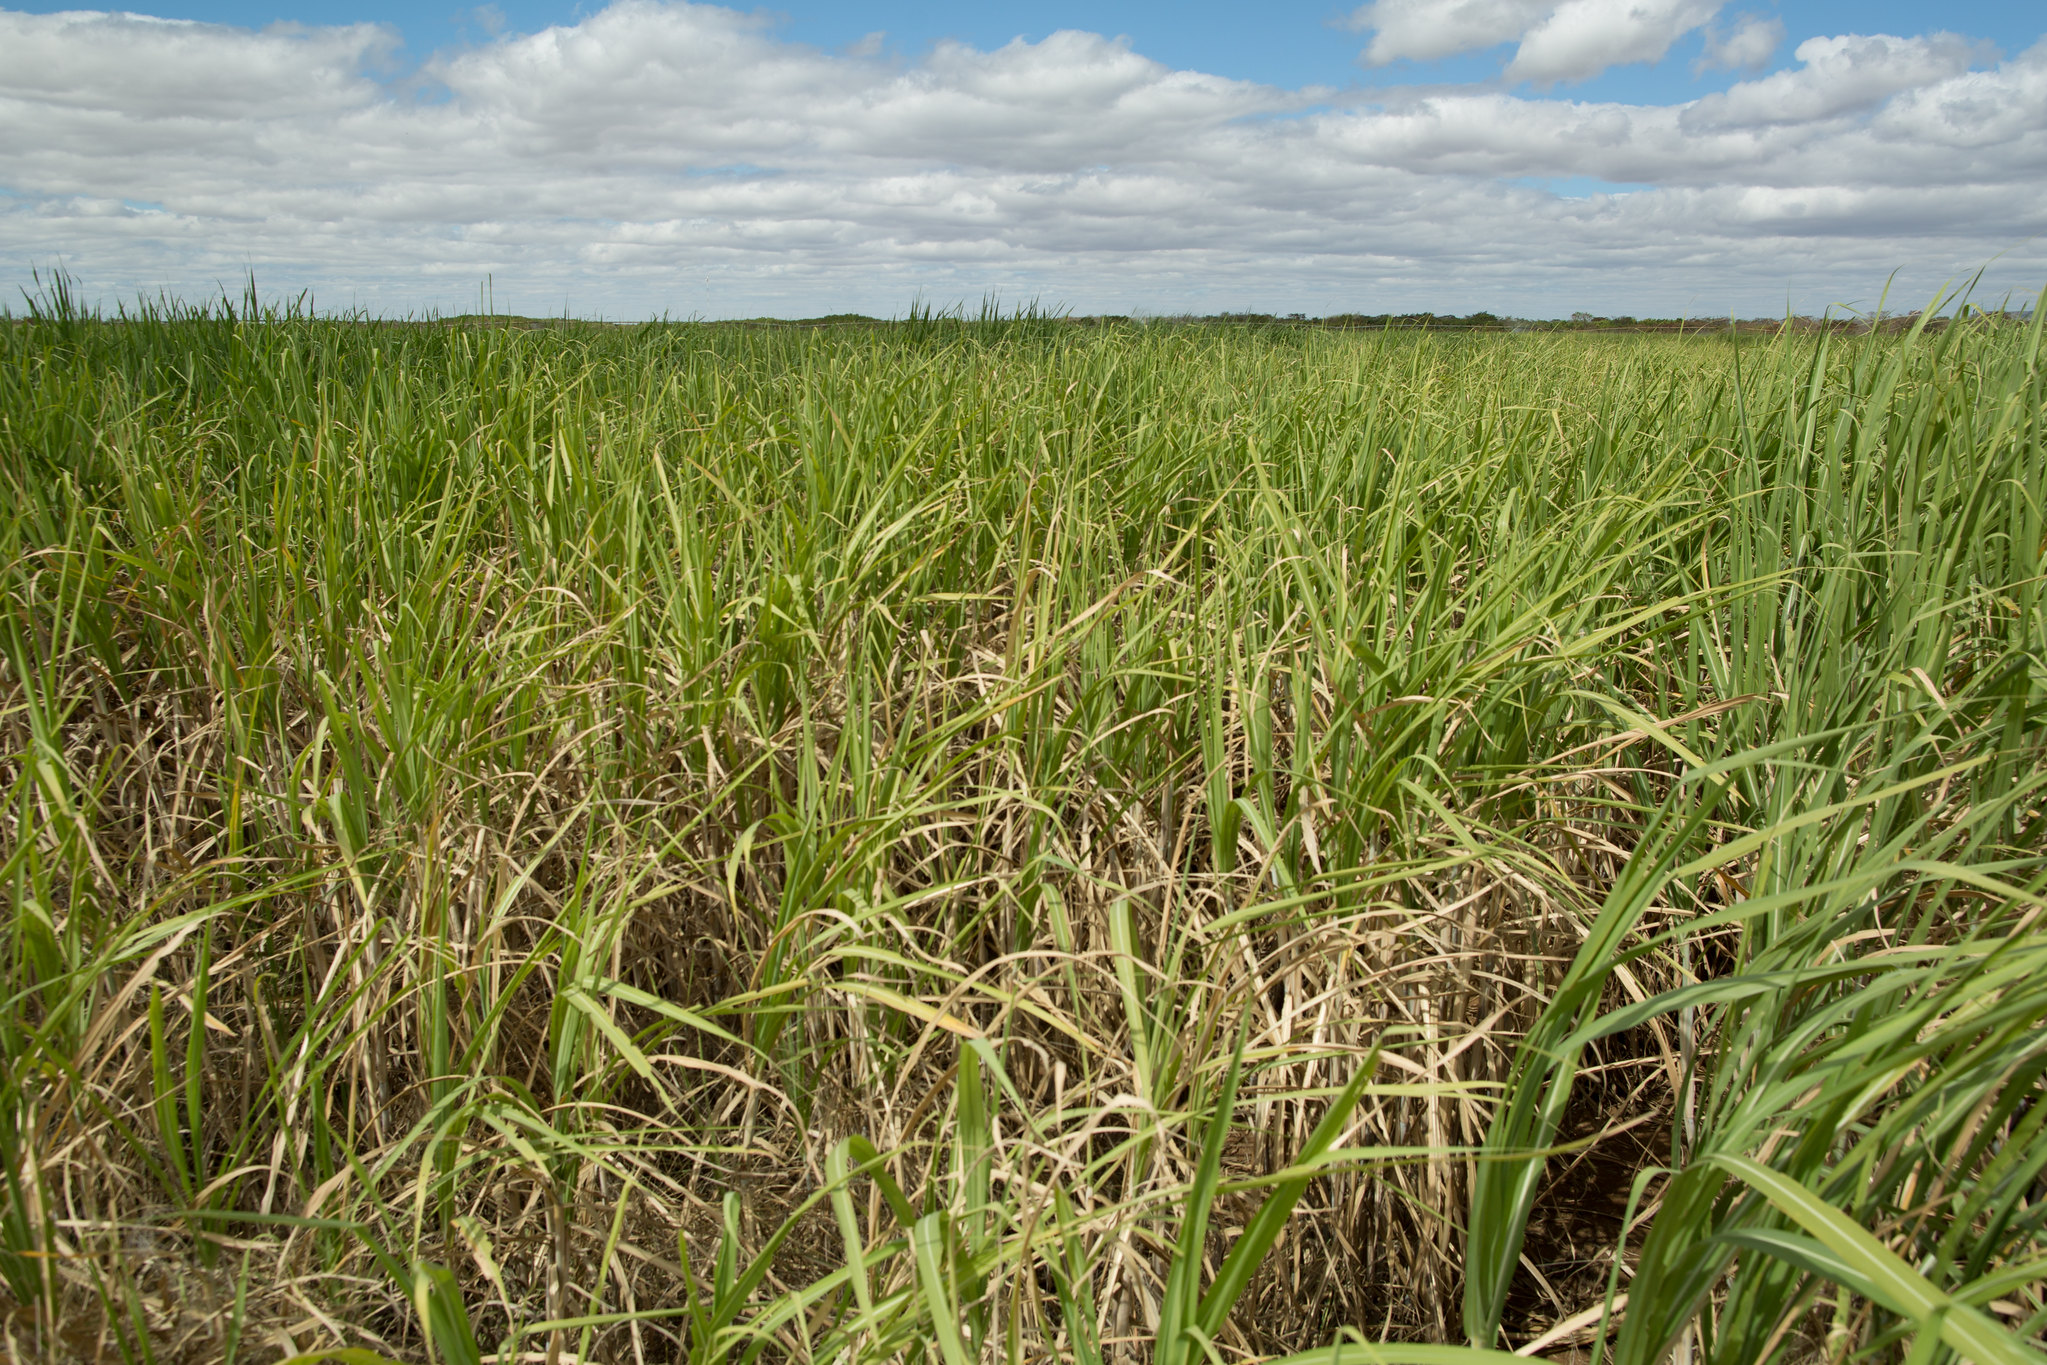 Produção paulista de cana-de-açúcar é estimada em 283,4 milhões de toneladas